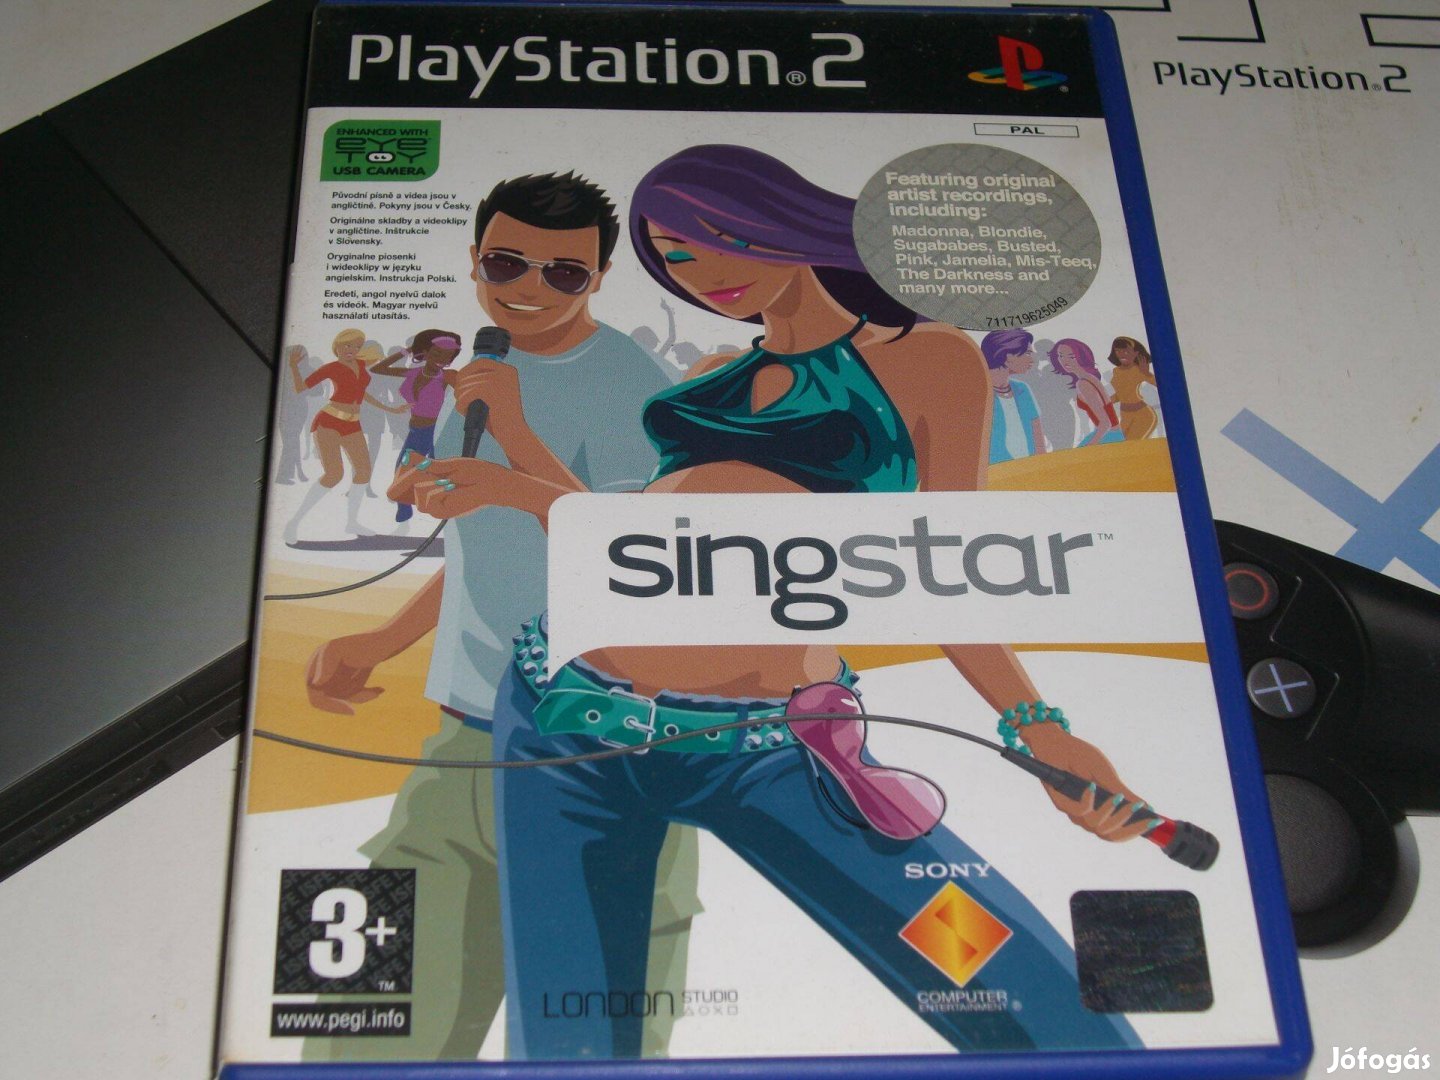 Singstar Playstation 2 eredeti lemez eladó